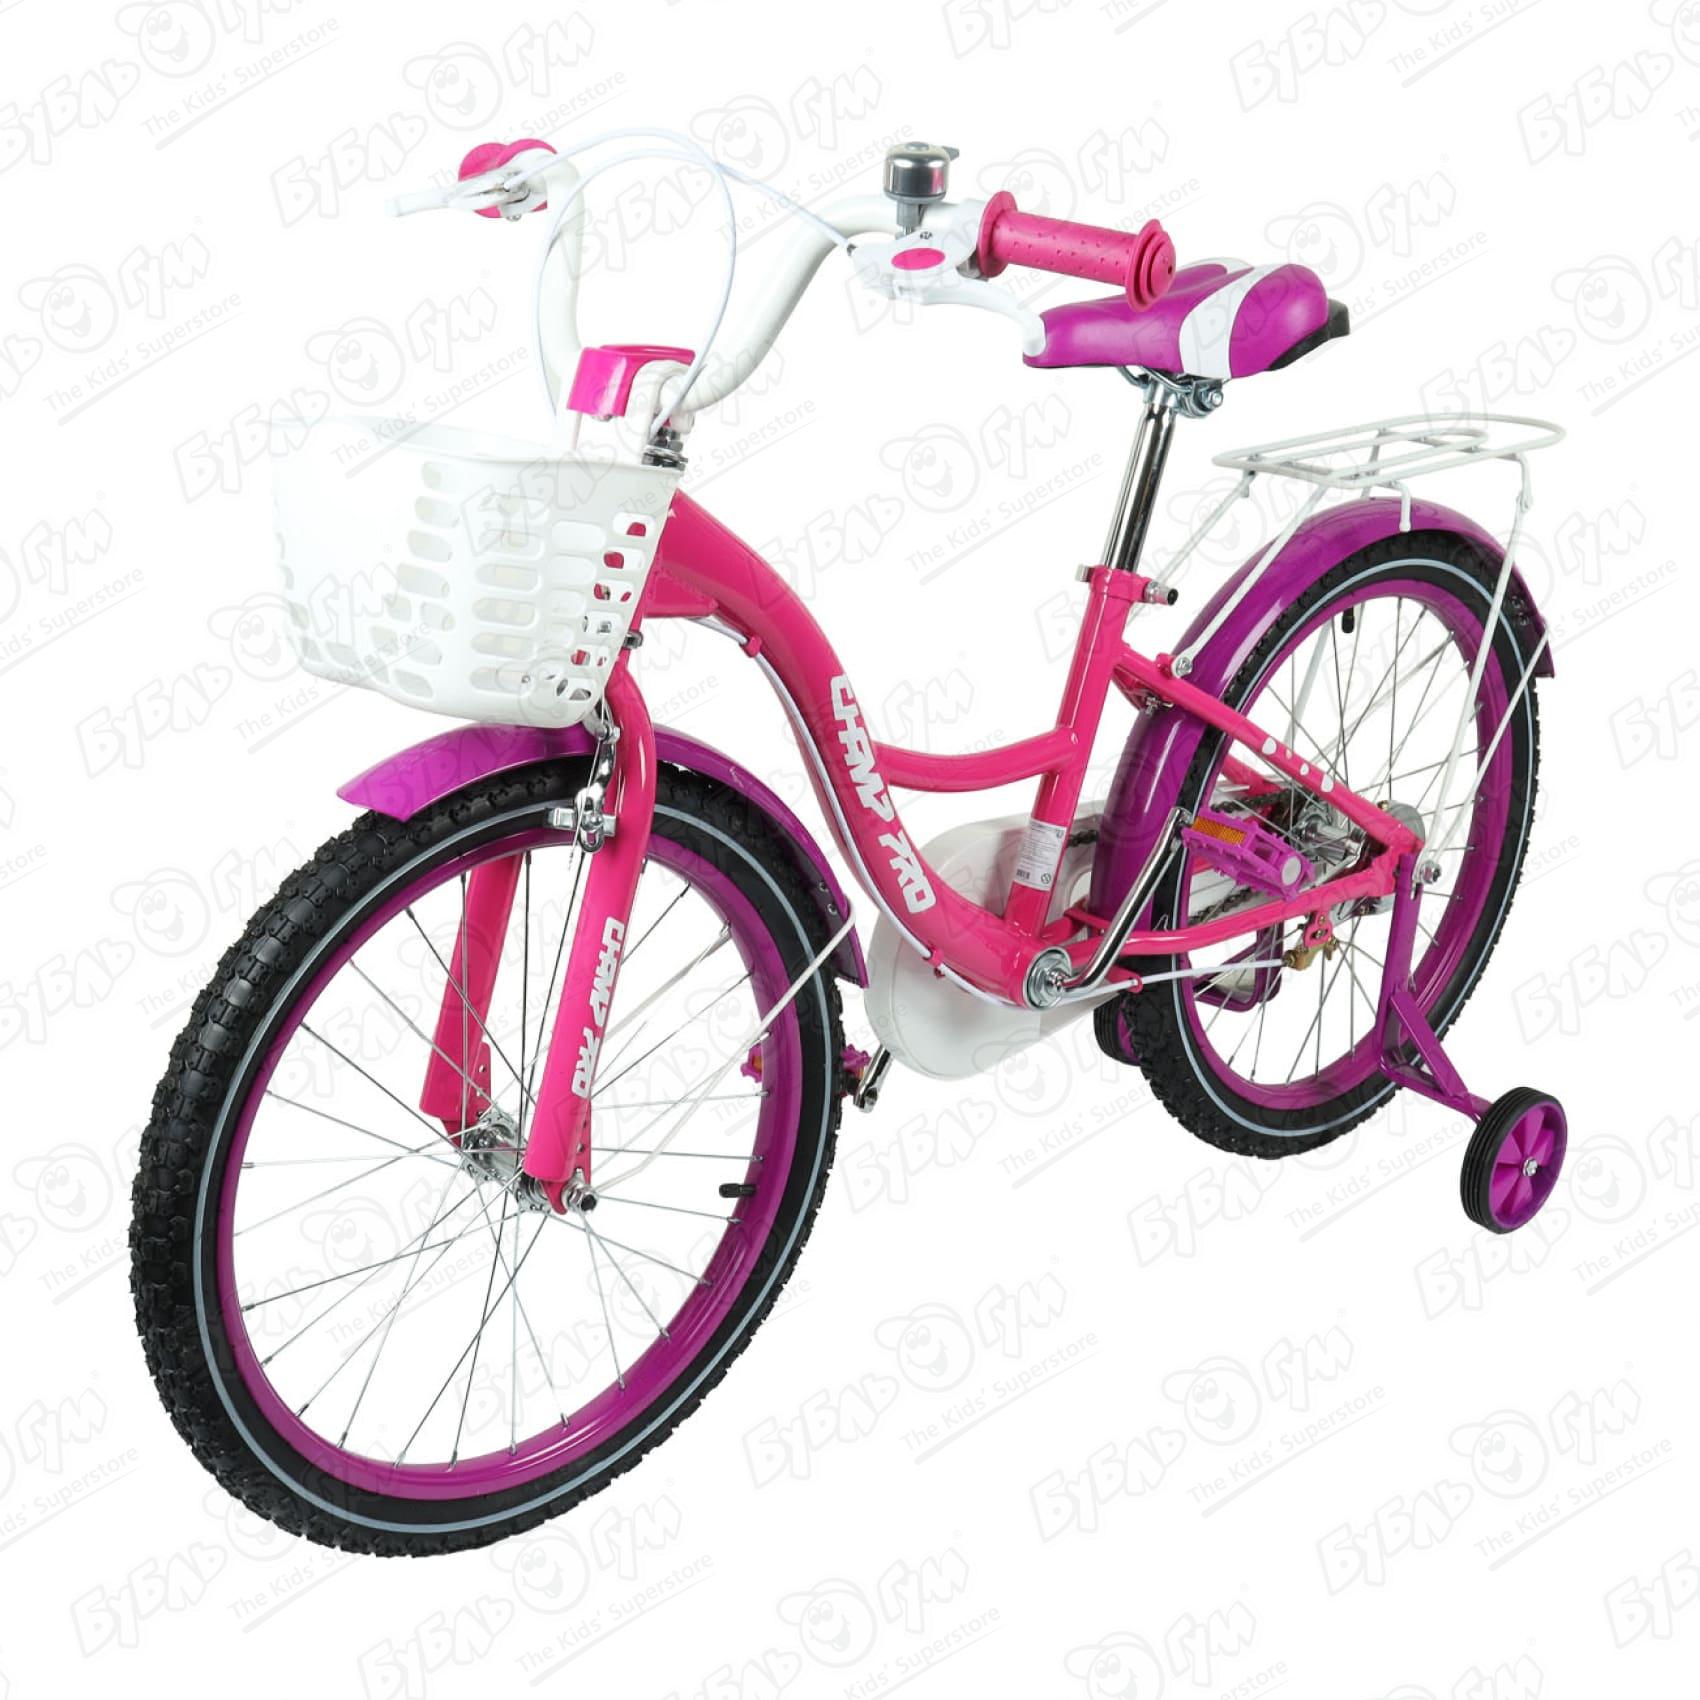 Велосипед Champ Pro G20 с корзиной розово-фиолетовый велосипед champ pro g16 с корзиной и светоотражателем розовый